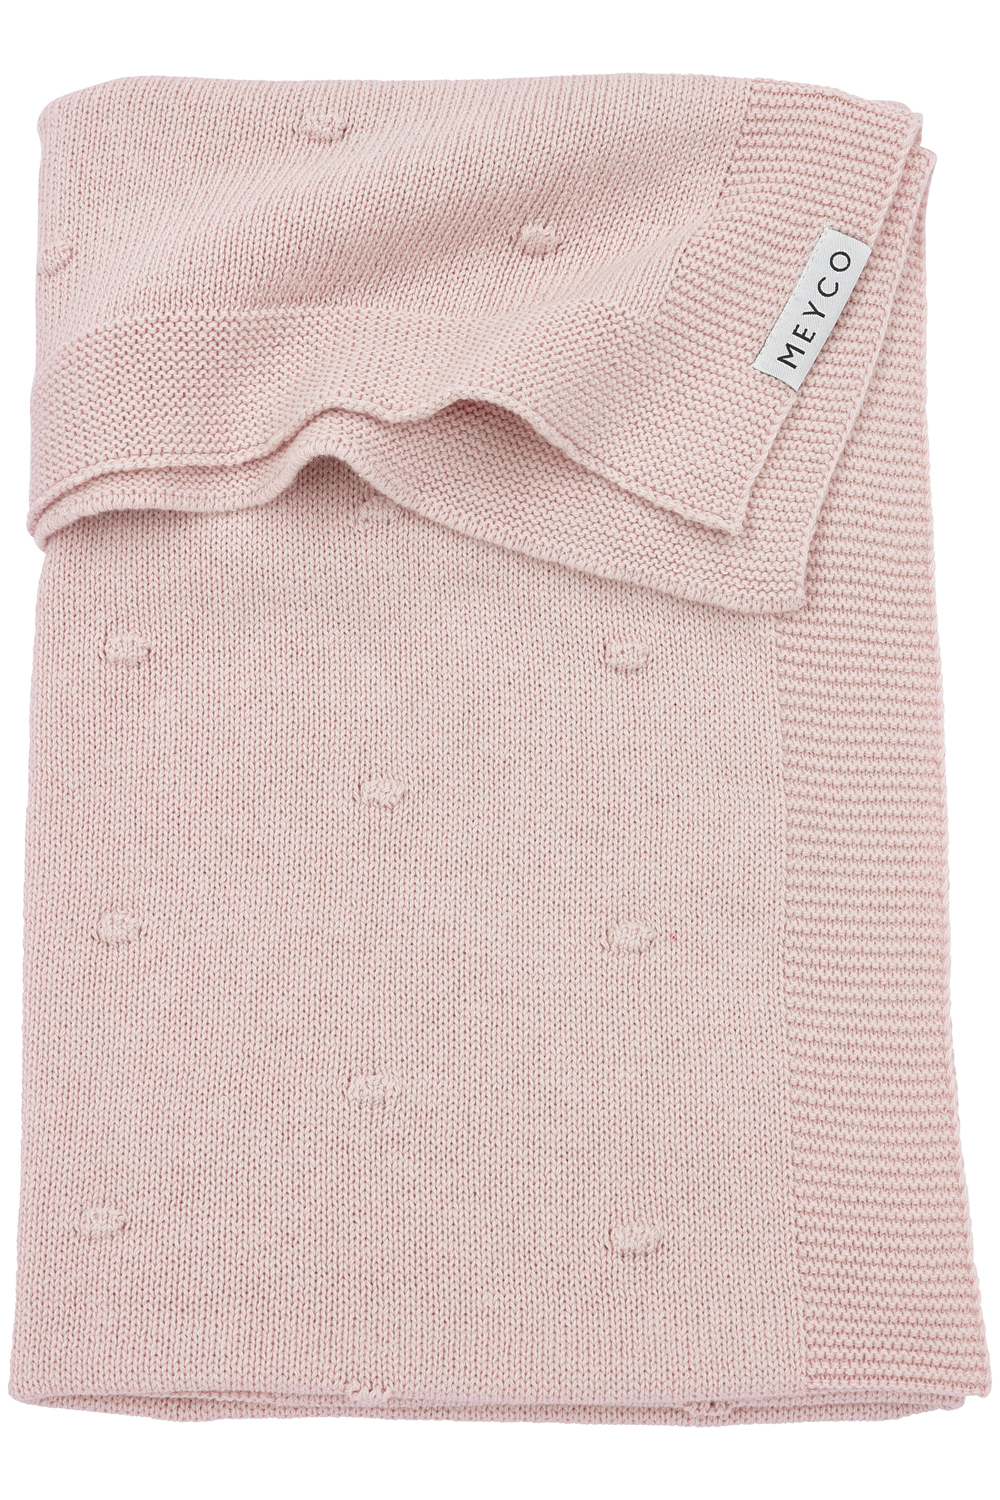 Wiegdeken Mini Knots - Soft Pink - 75x100cm